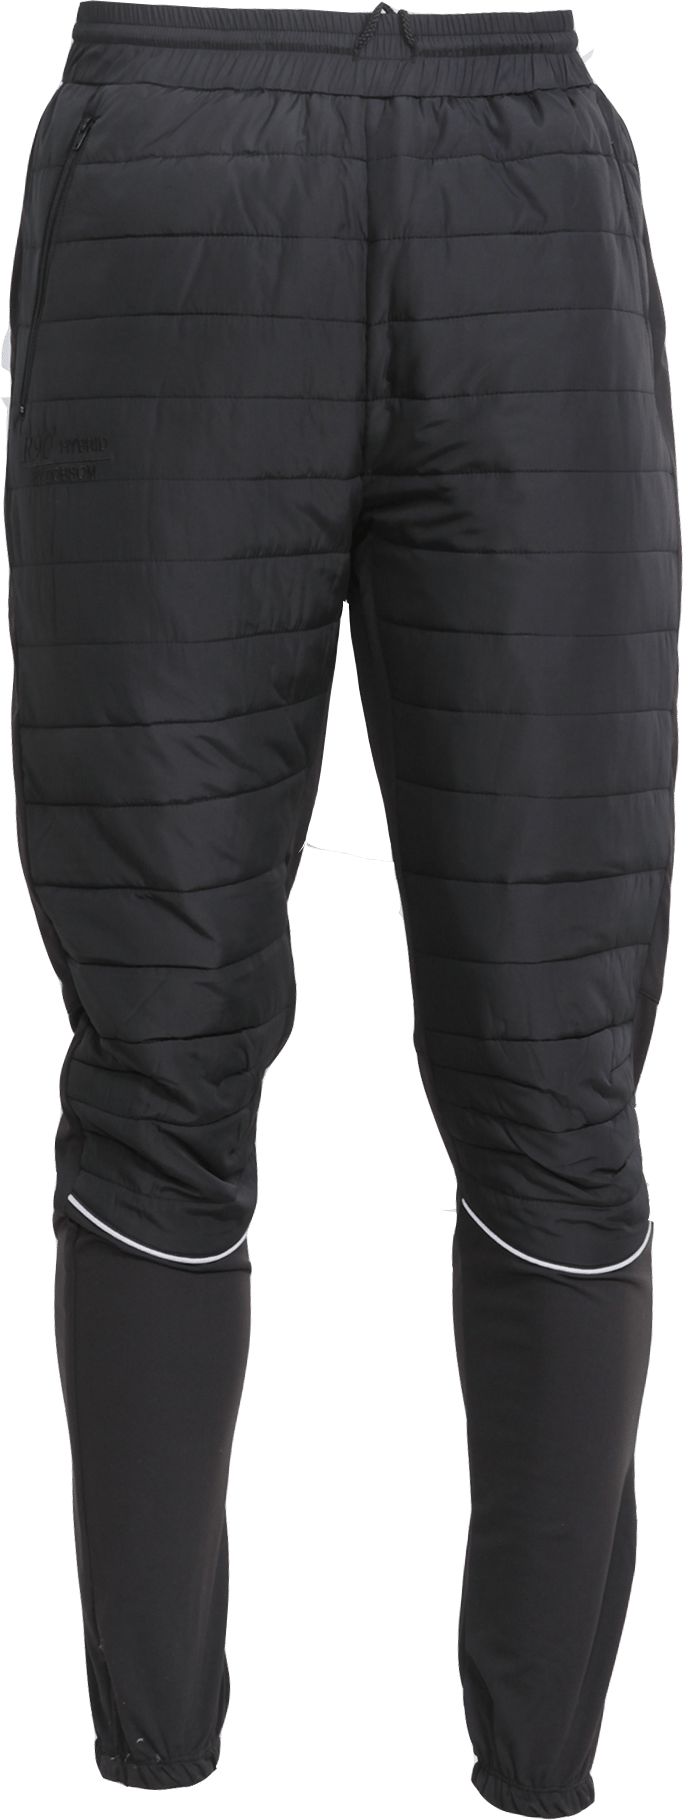 Women's R90 Hybrid Pants Black Dobsom